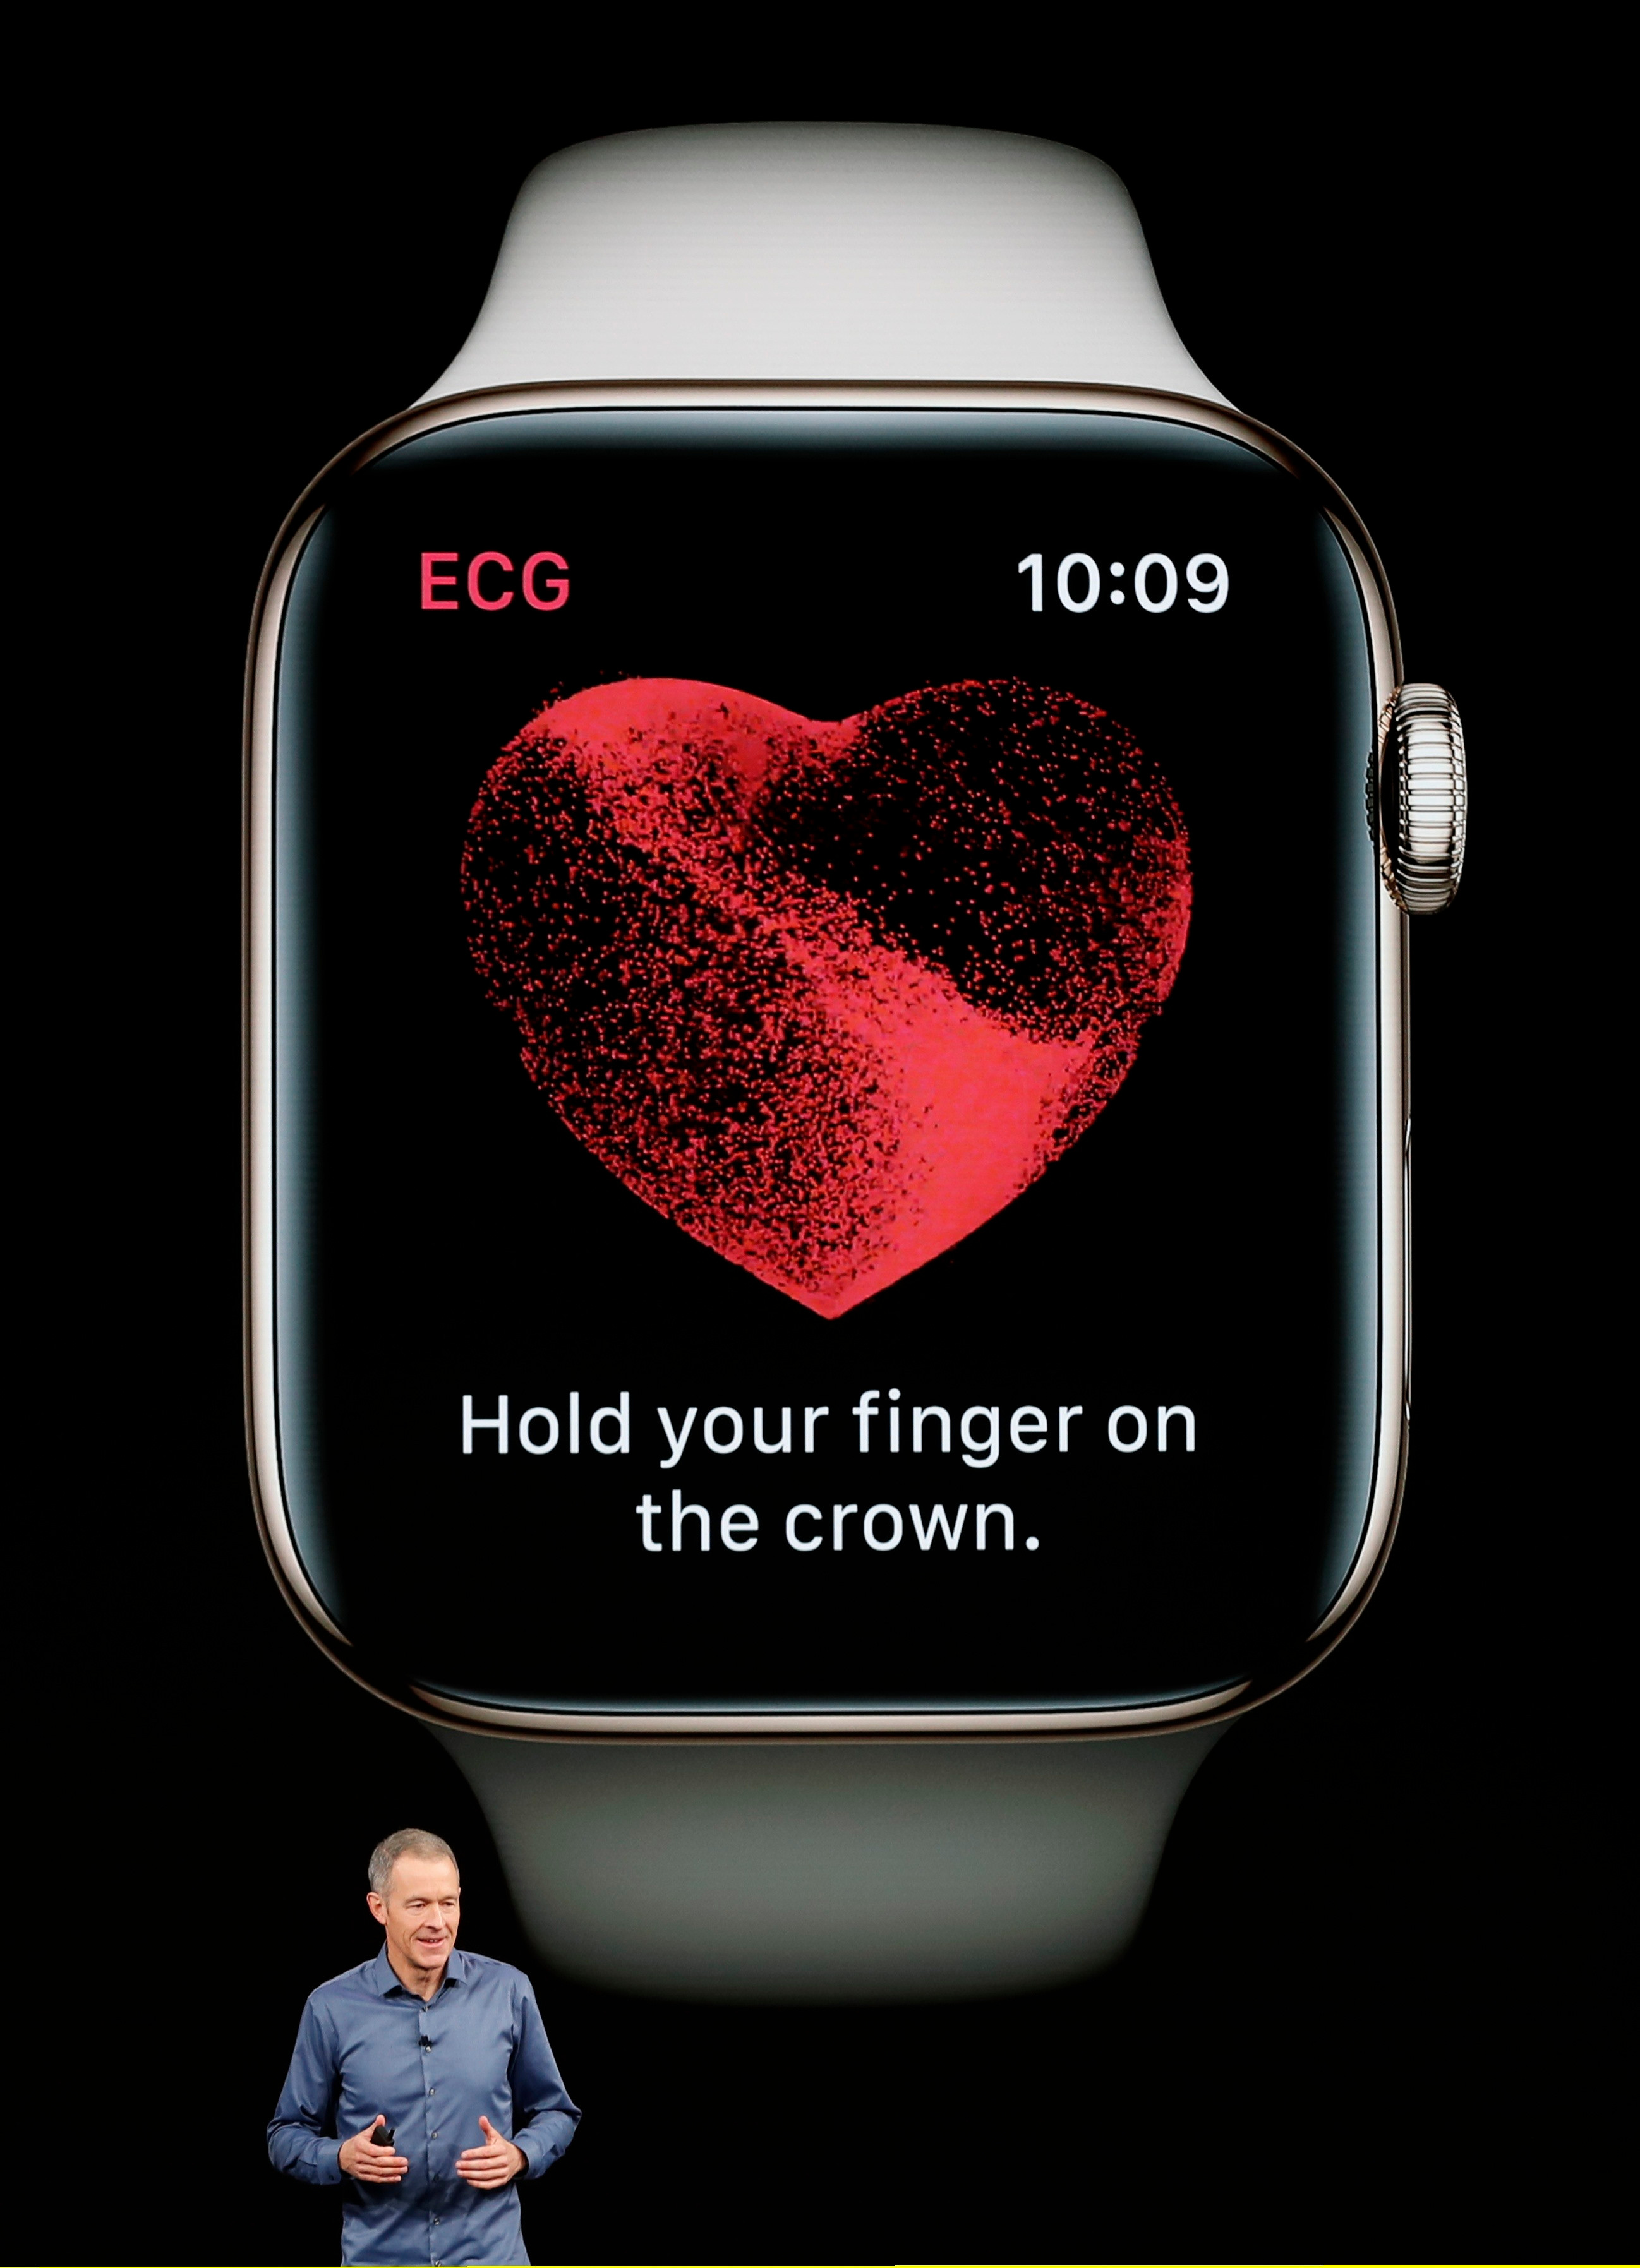   نحن نتوقع نسخة جديدة من Apple Watch أن يتم كشف النقاب عنها أيضًا